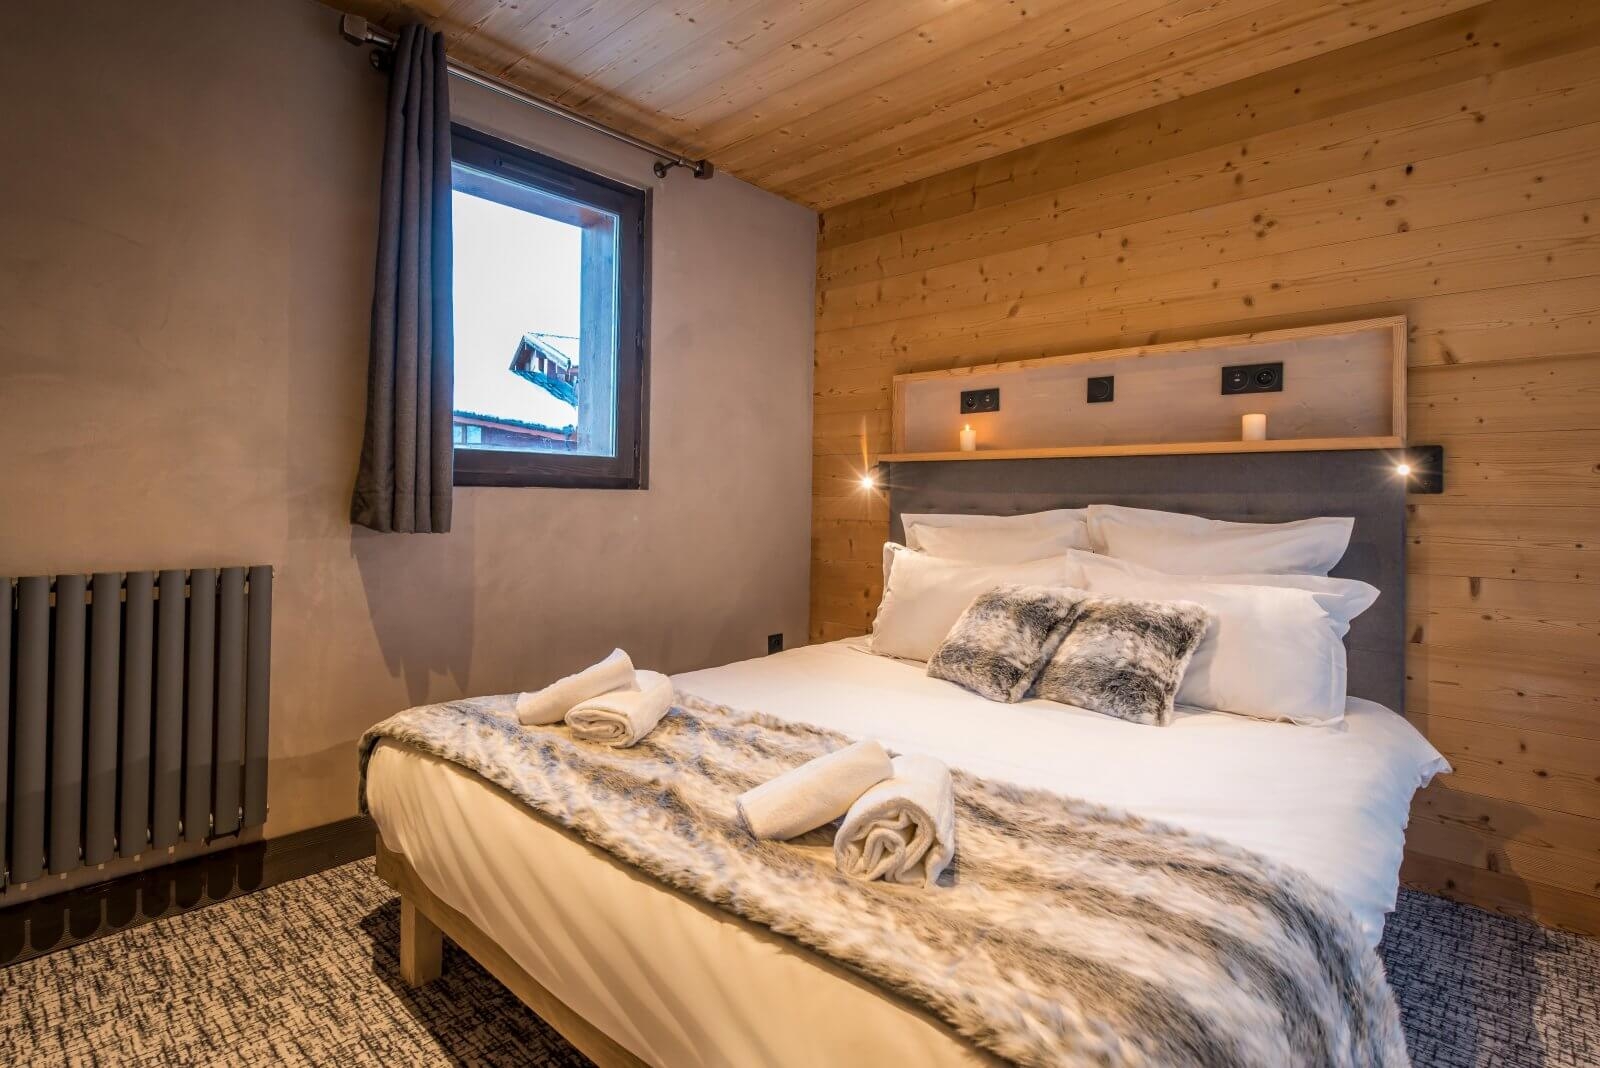 Chalet Altitude: Appartement für 14 Personen: Schlafzimmer (Beispiel)